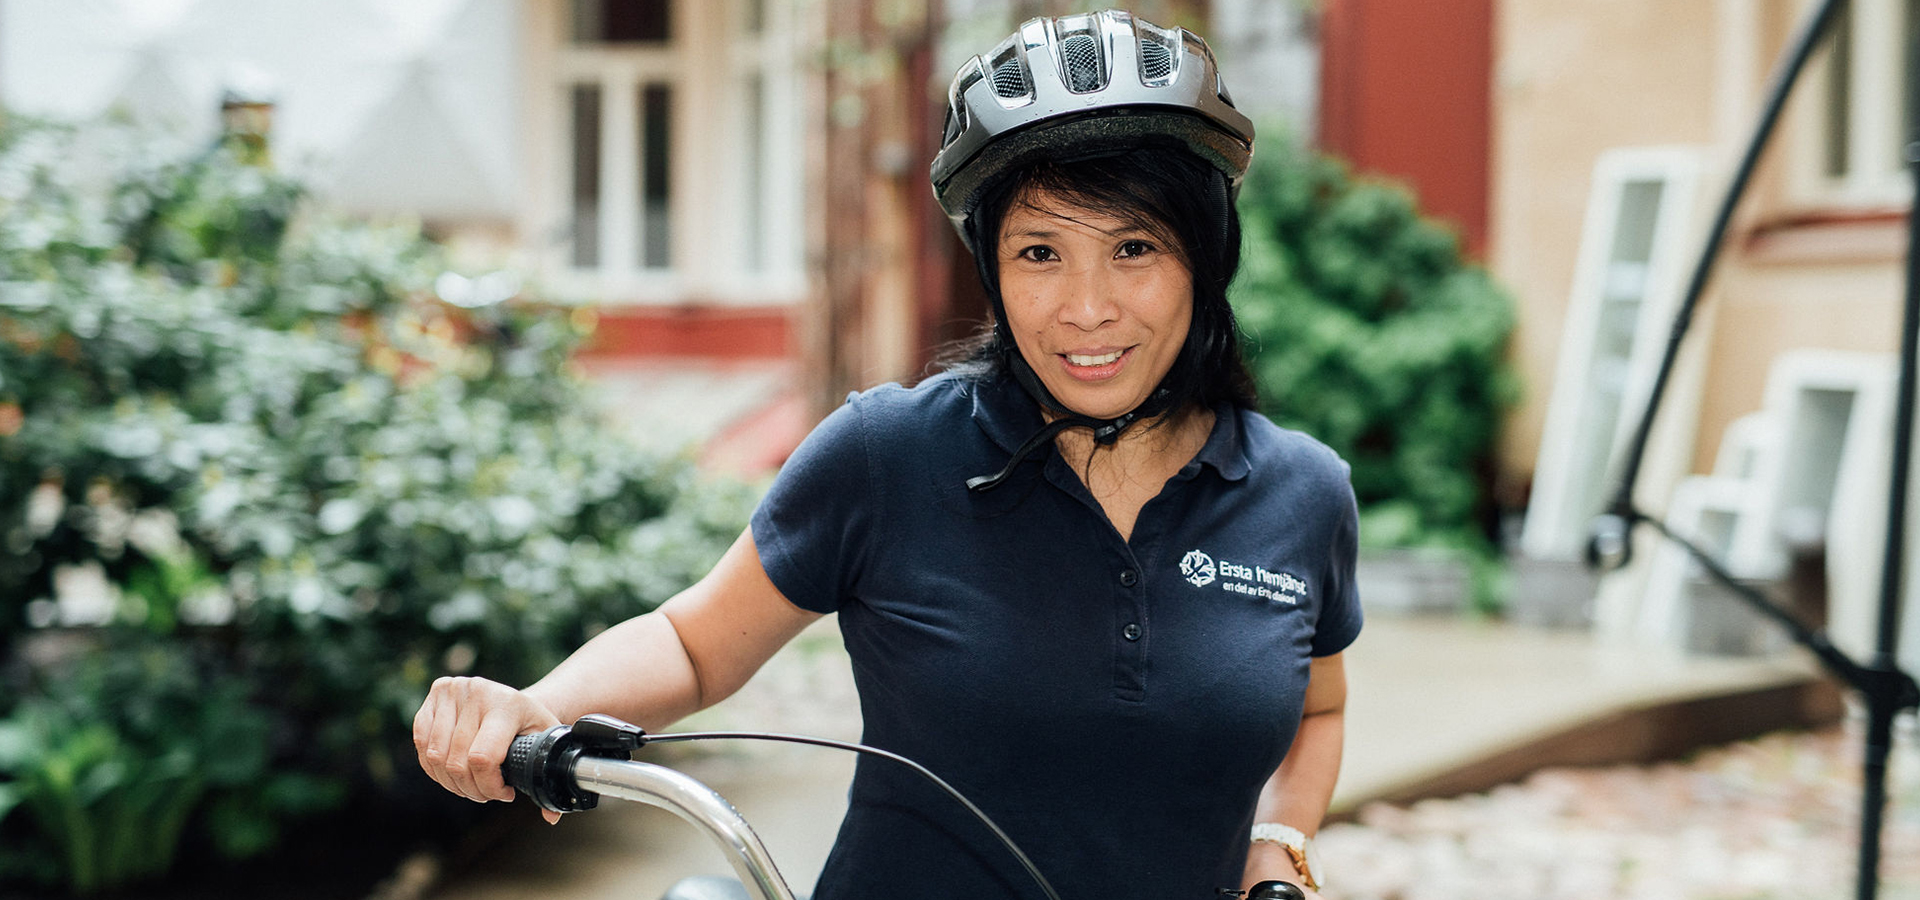 kvinna som jobbar inom ersta hgemtjänst står med cykel